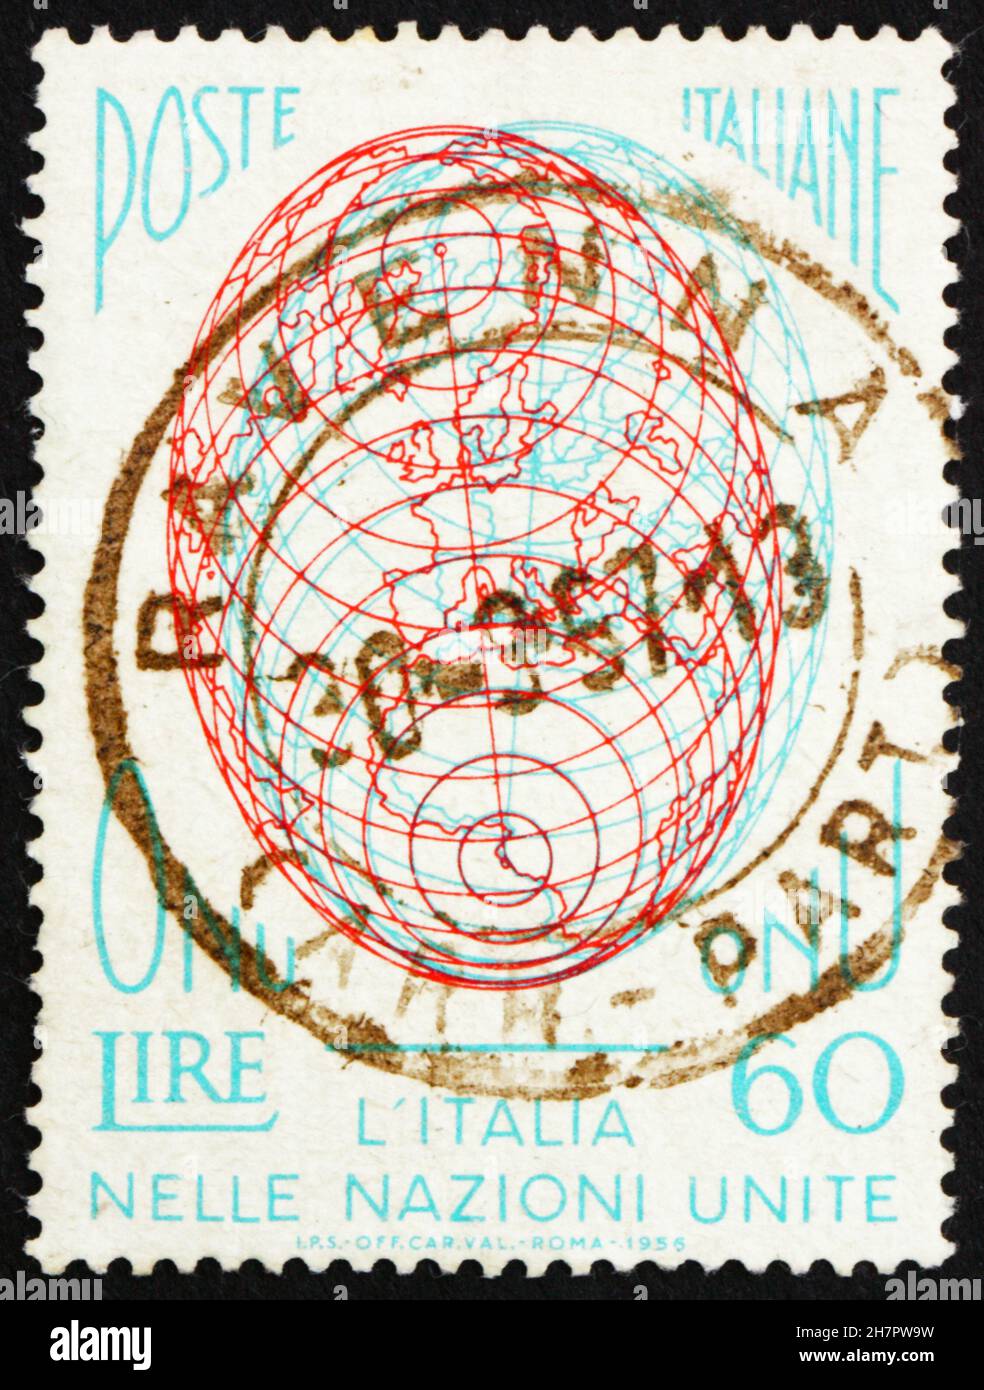 ITALIEN - UM 1956: Eine in Italien gedruckte Marke zeigt Globe, Italiens Aufnahme bei den Vereinten Nationen, um 1956 Stockfoto